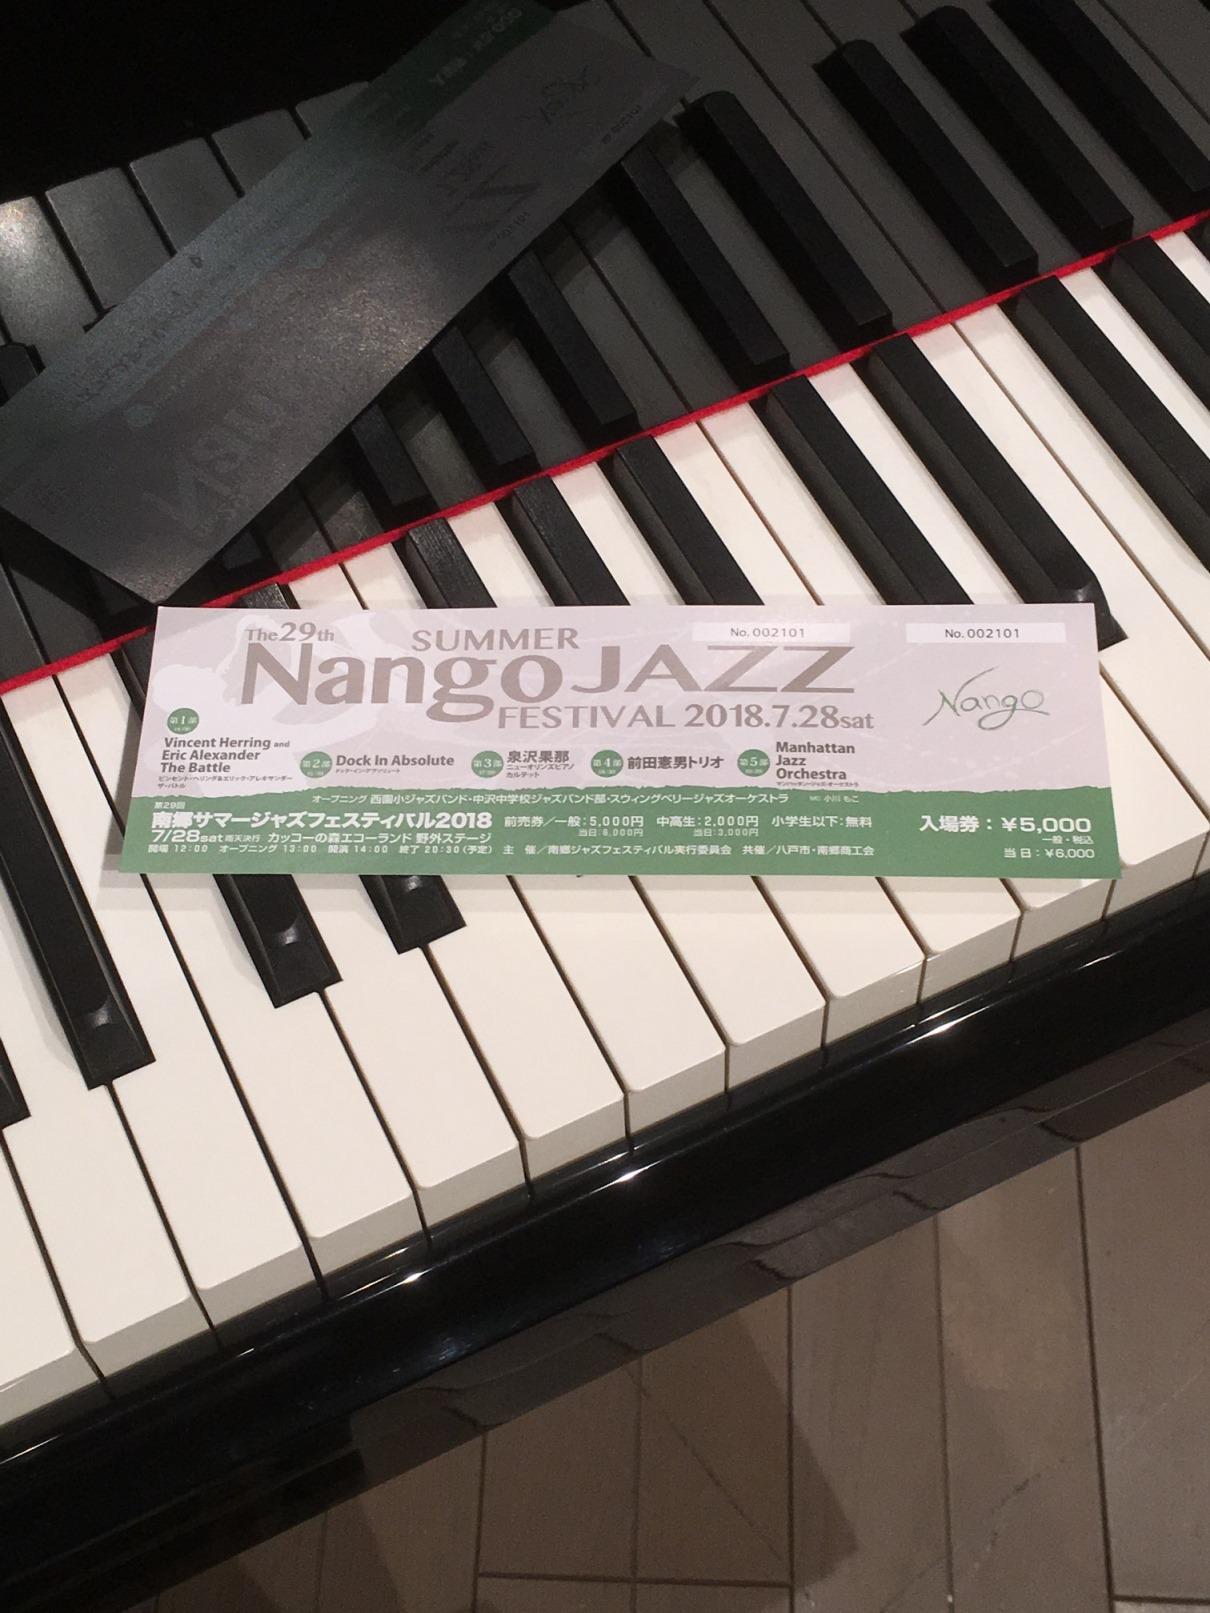 ピアノの鍵盤の上に置かれたサマージャズフェスティバル2018のチケットの写真